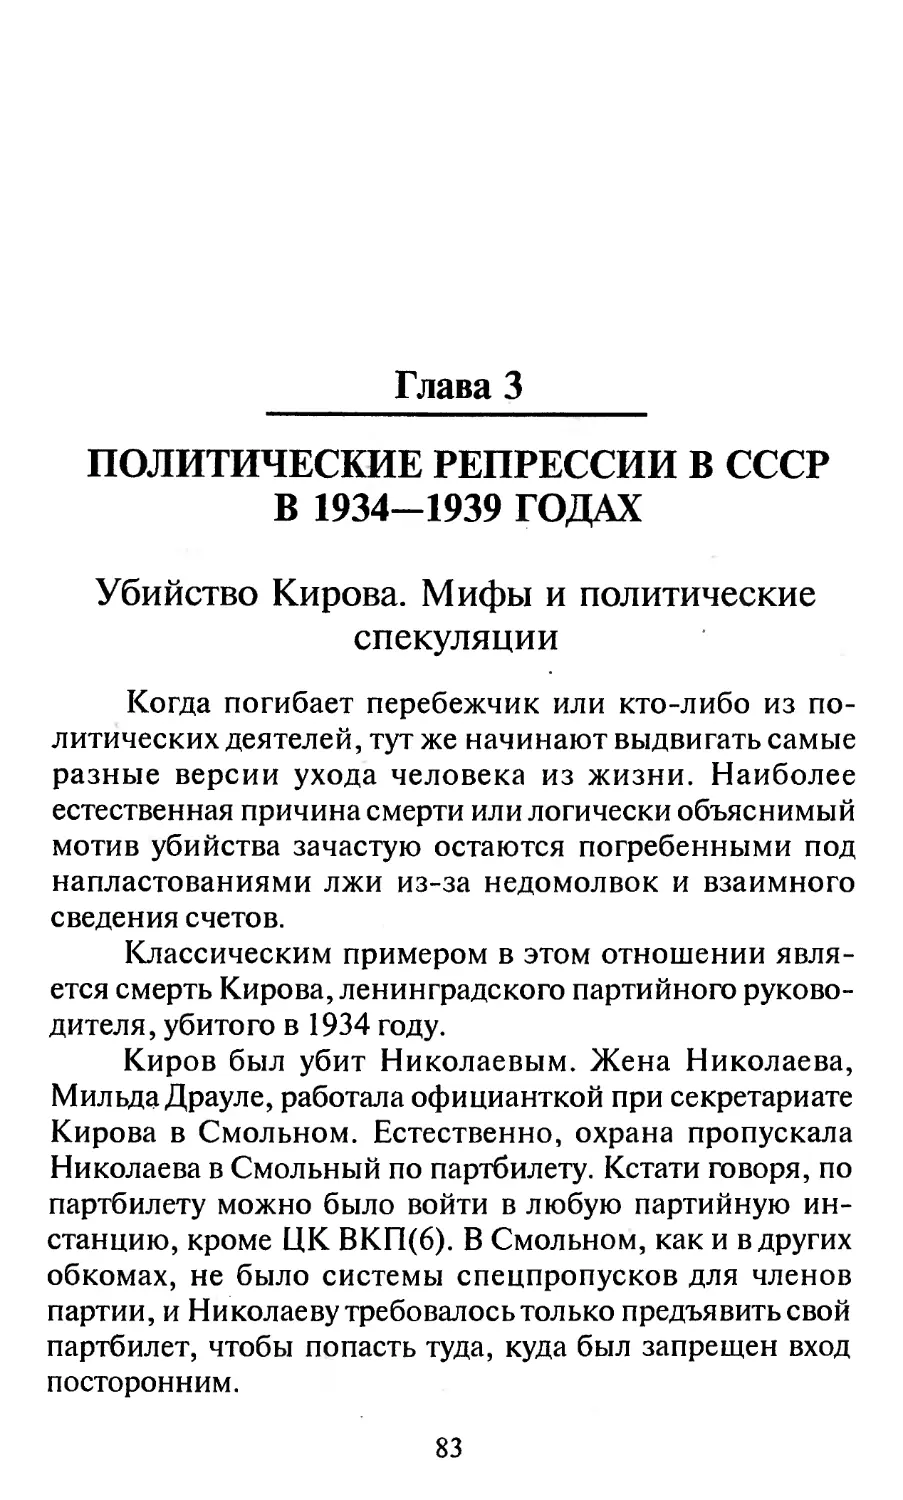 Глава 3. ПОЛИТИЧЕСКИЕ РЕПРЕССИИ В СССР В 1934-1939 ГОДАХ